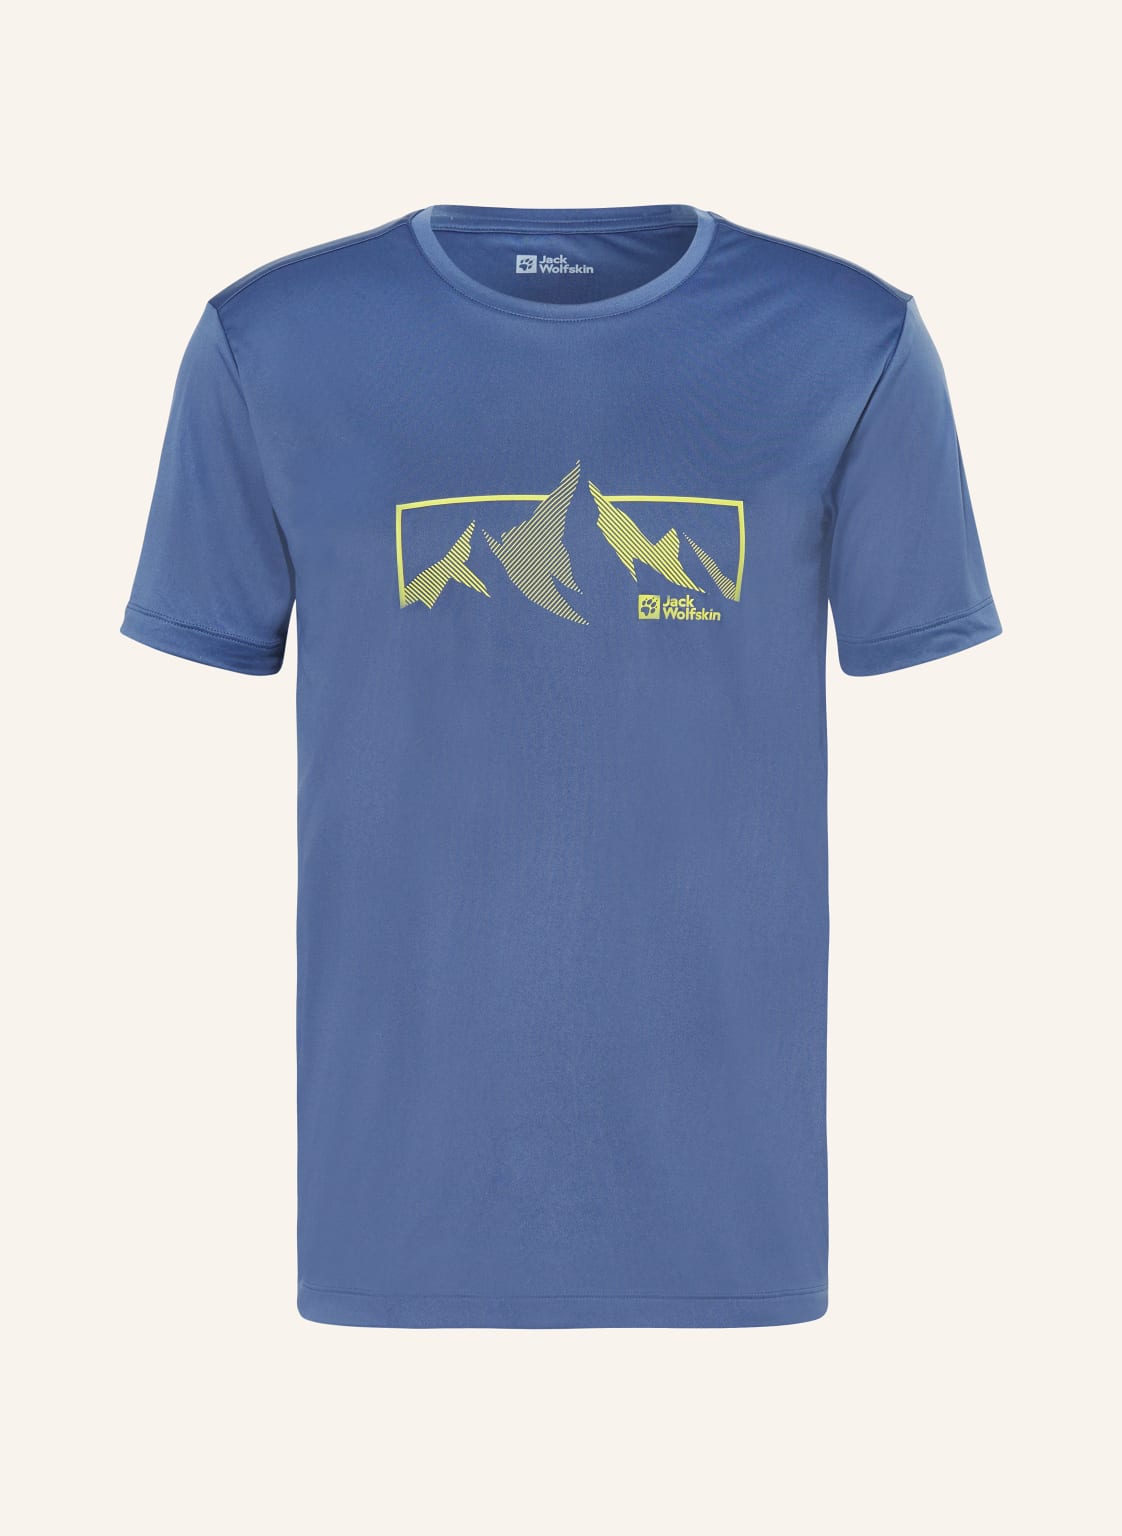 Jack Wolfskin T-Shirt Peak Graphic blau von Jack Wolfskin